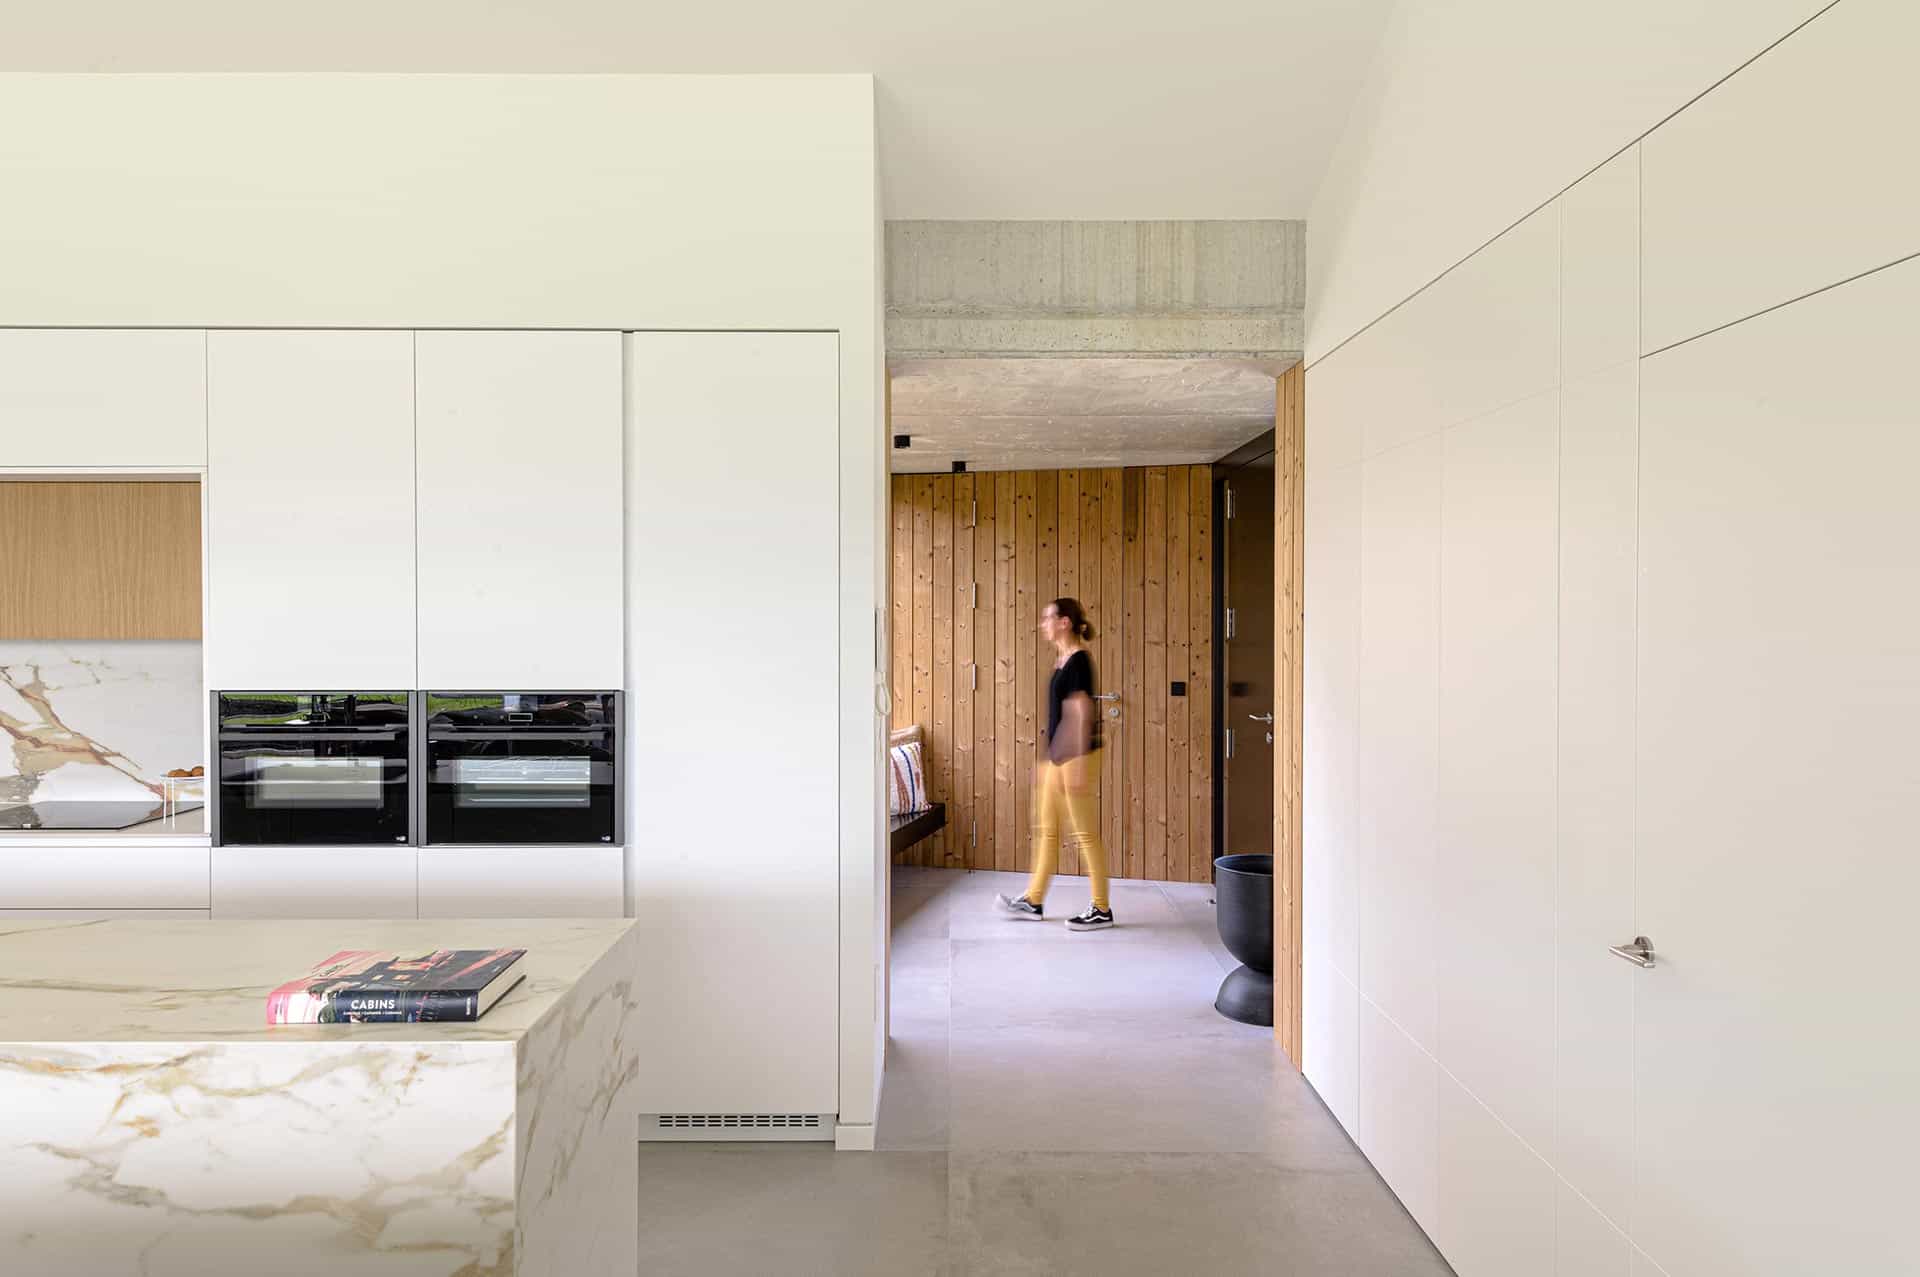 Diseño interior de cocina moderna diseñada por Moah Arquitectos en Suesa. Cantabria.